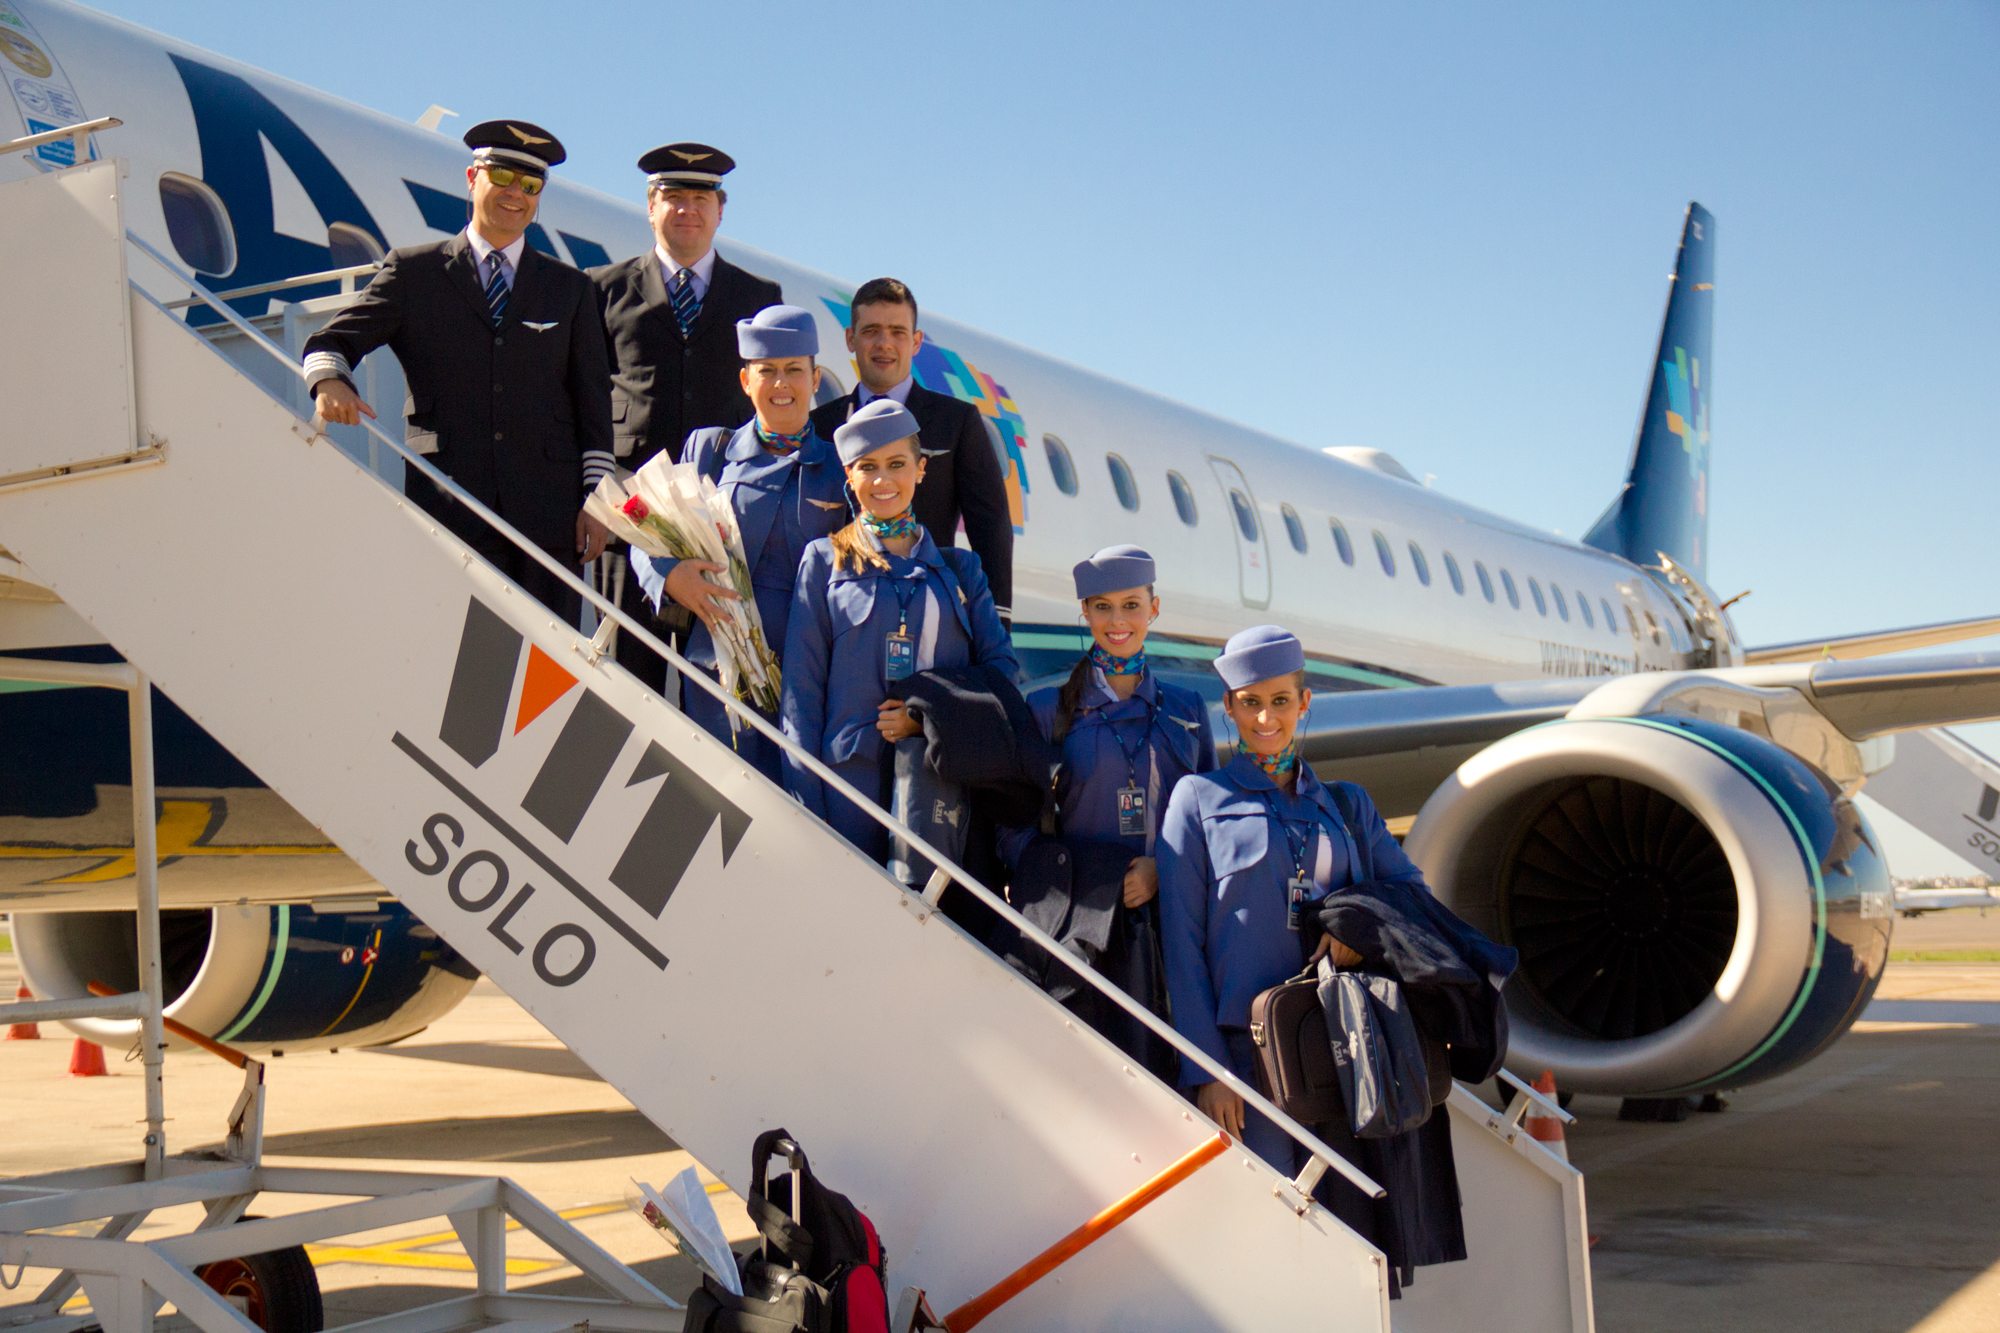  A Azul Linhas Aéreas está com novas oportunidades de emprego para Jovem Aprendiz, confira